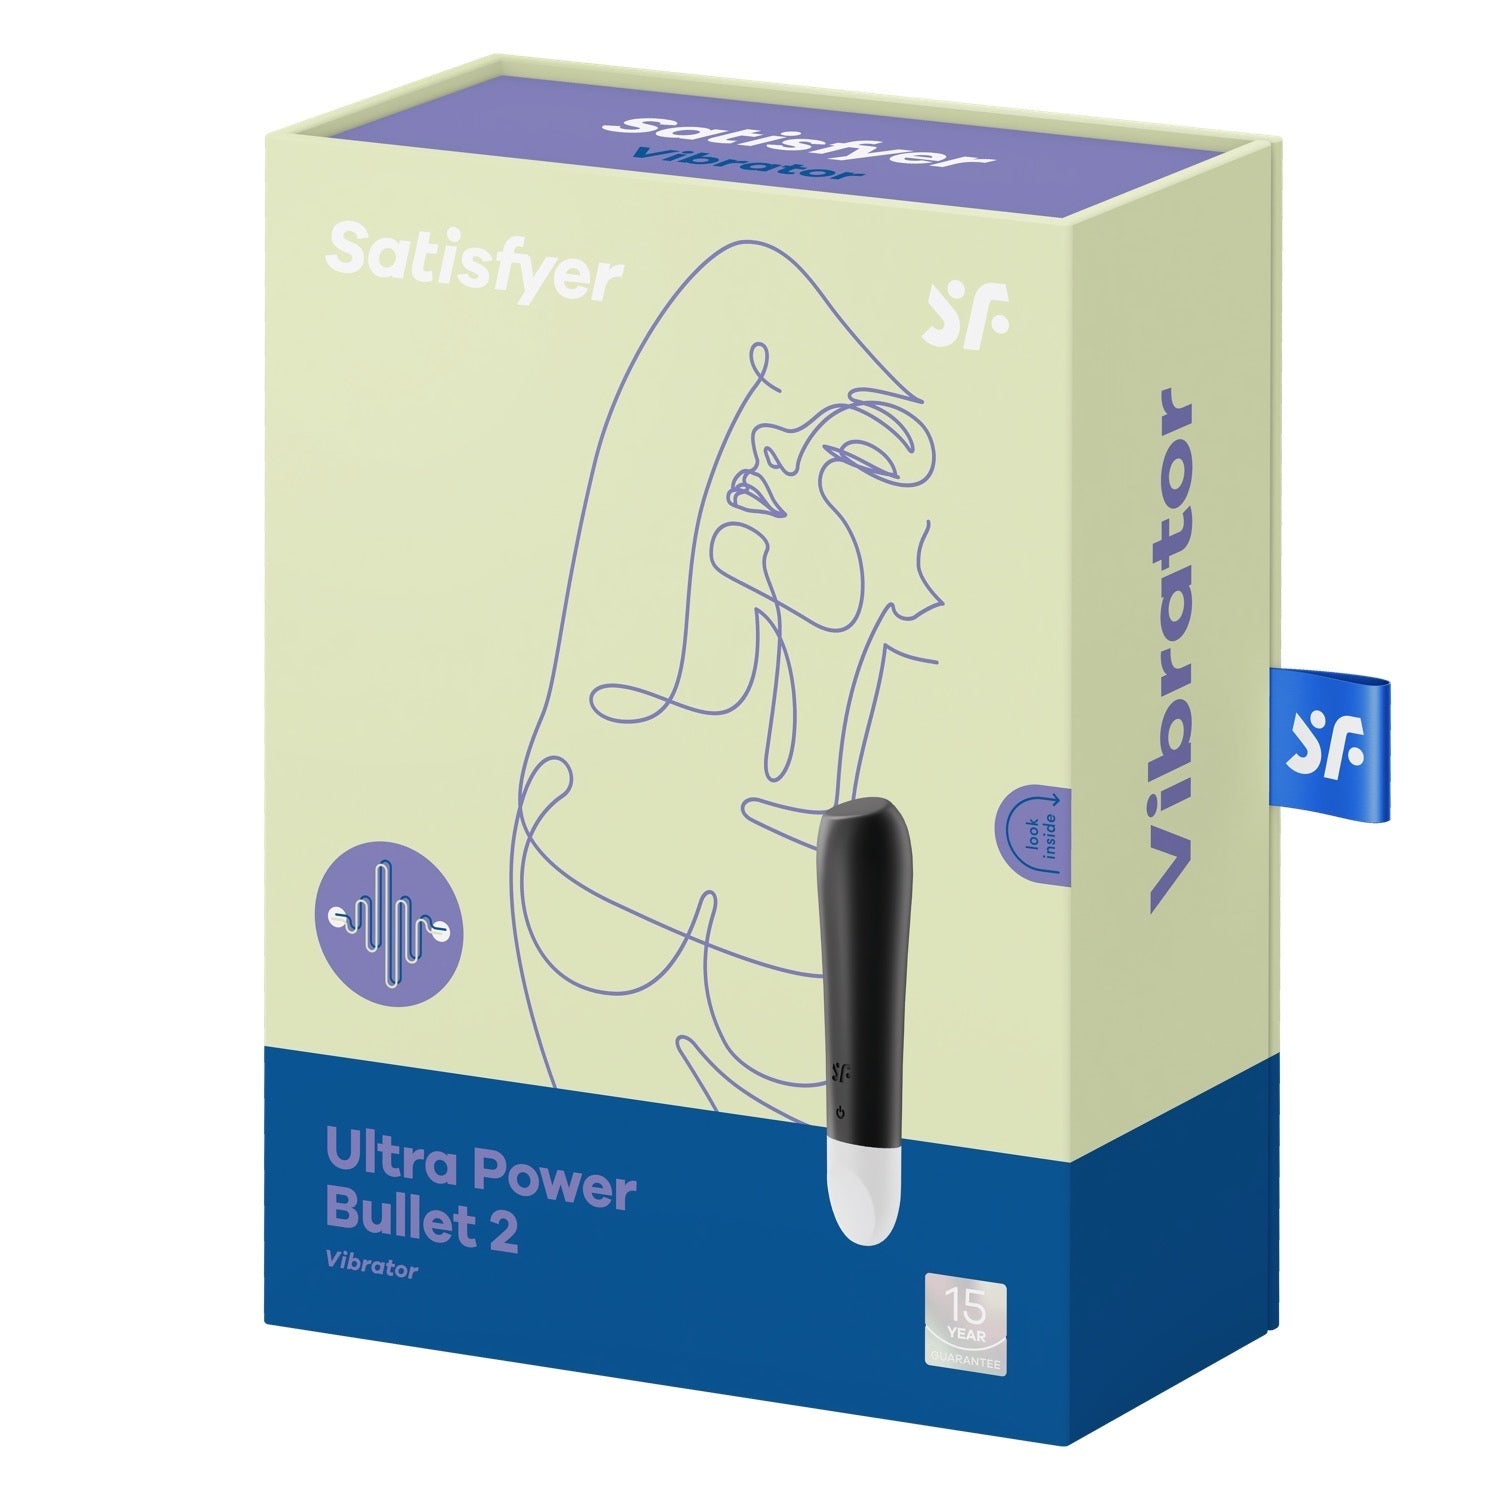 Satisfyer Ultra Power Bullet 2 - Black by Satisfyer